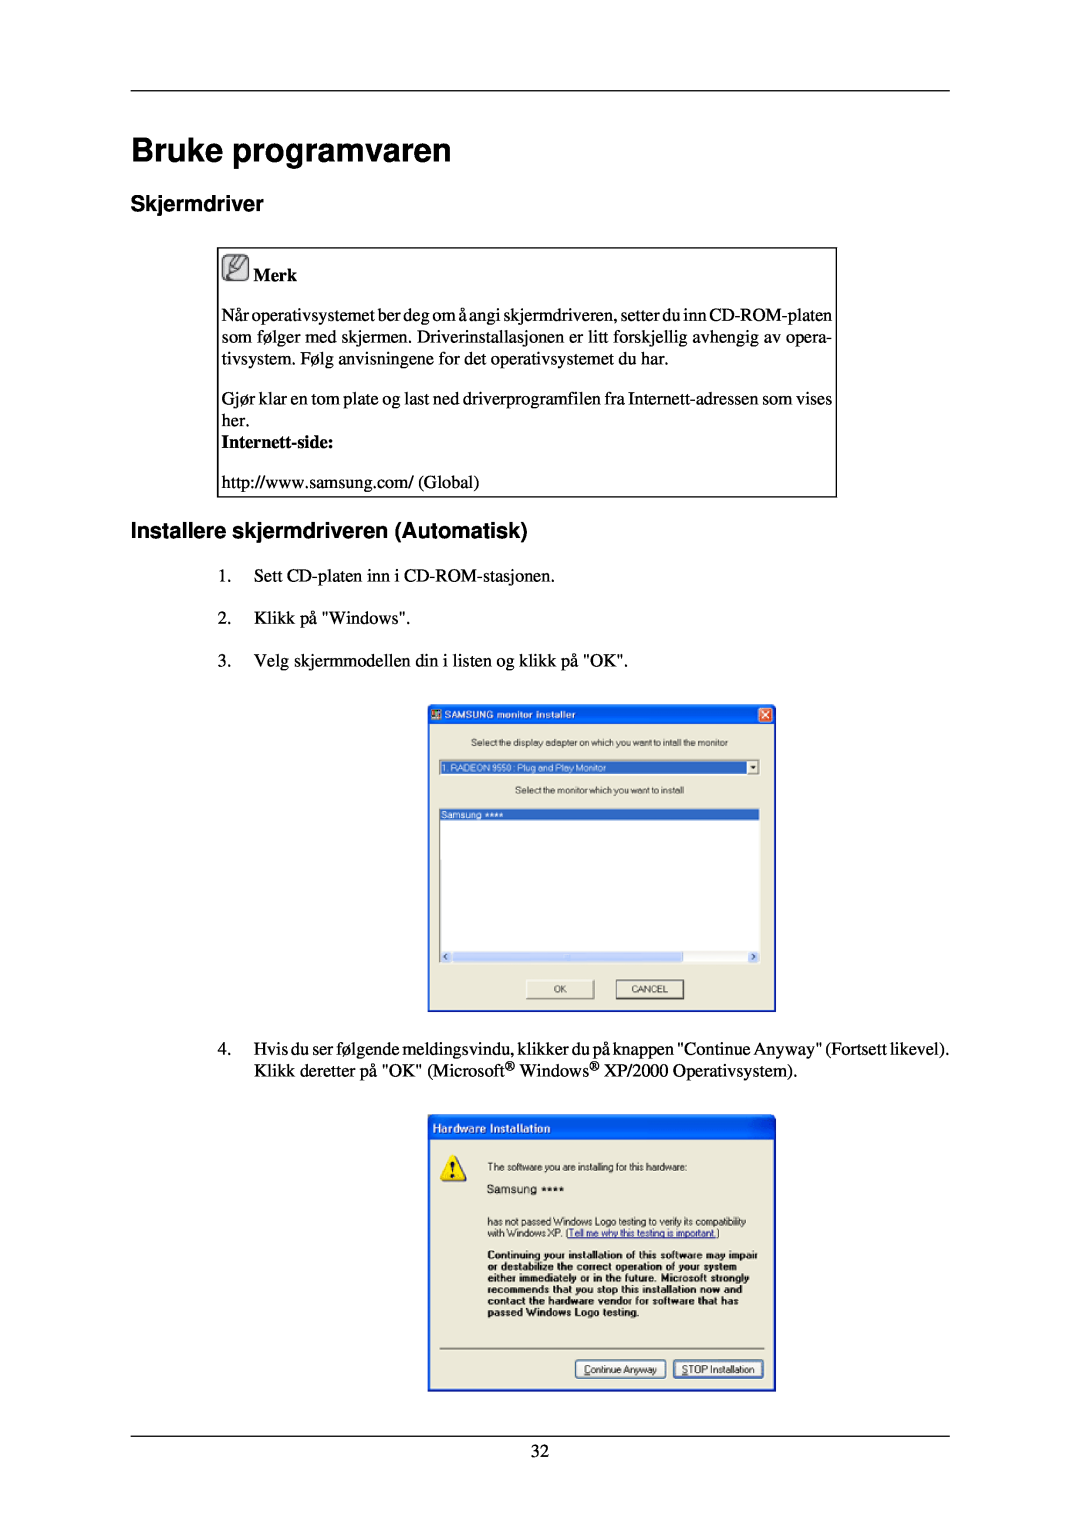 Samsung LH46TCUMBG/EN manual Bruke programvaren, Skjermdriver, Installere skjermdriveren Automatisk, Internett-side, Merk 